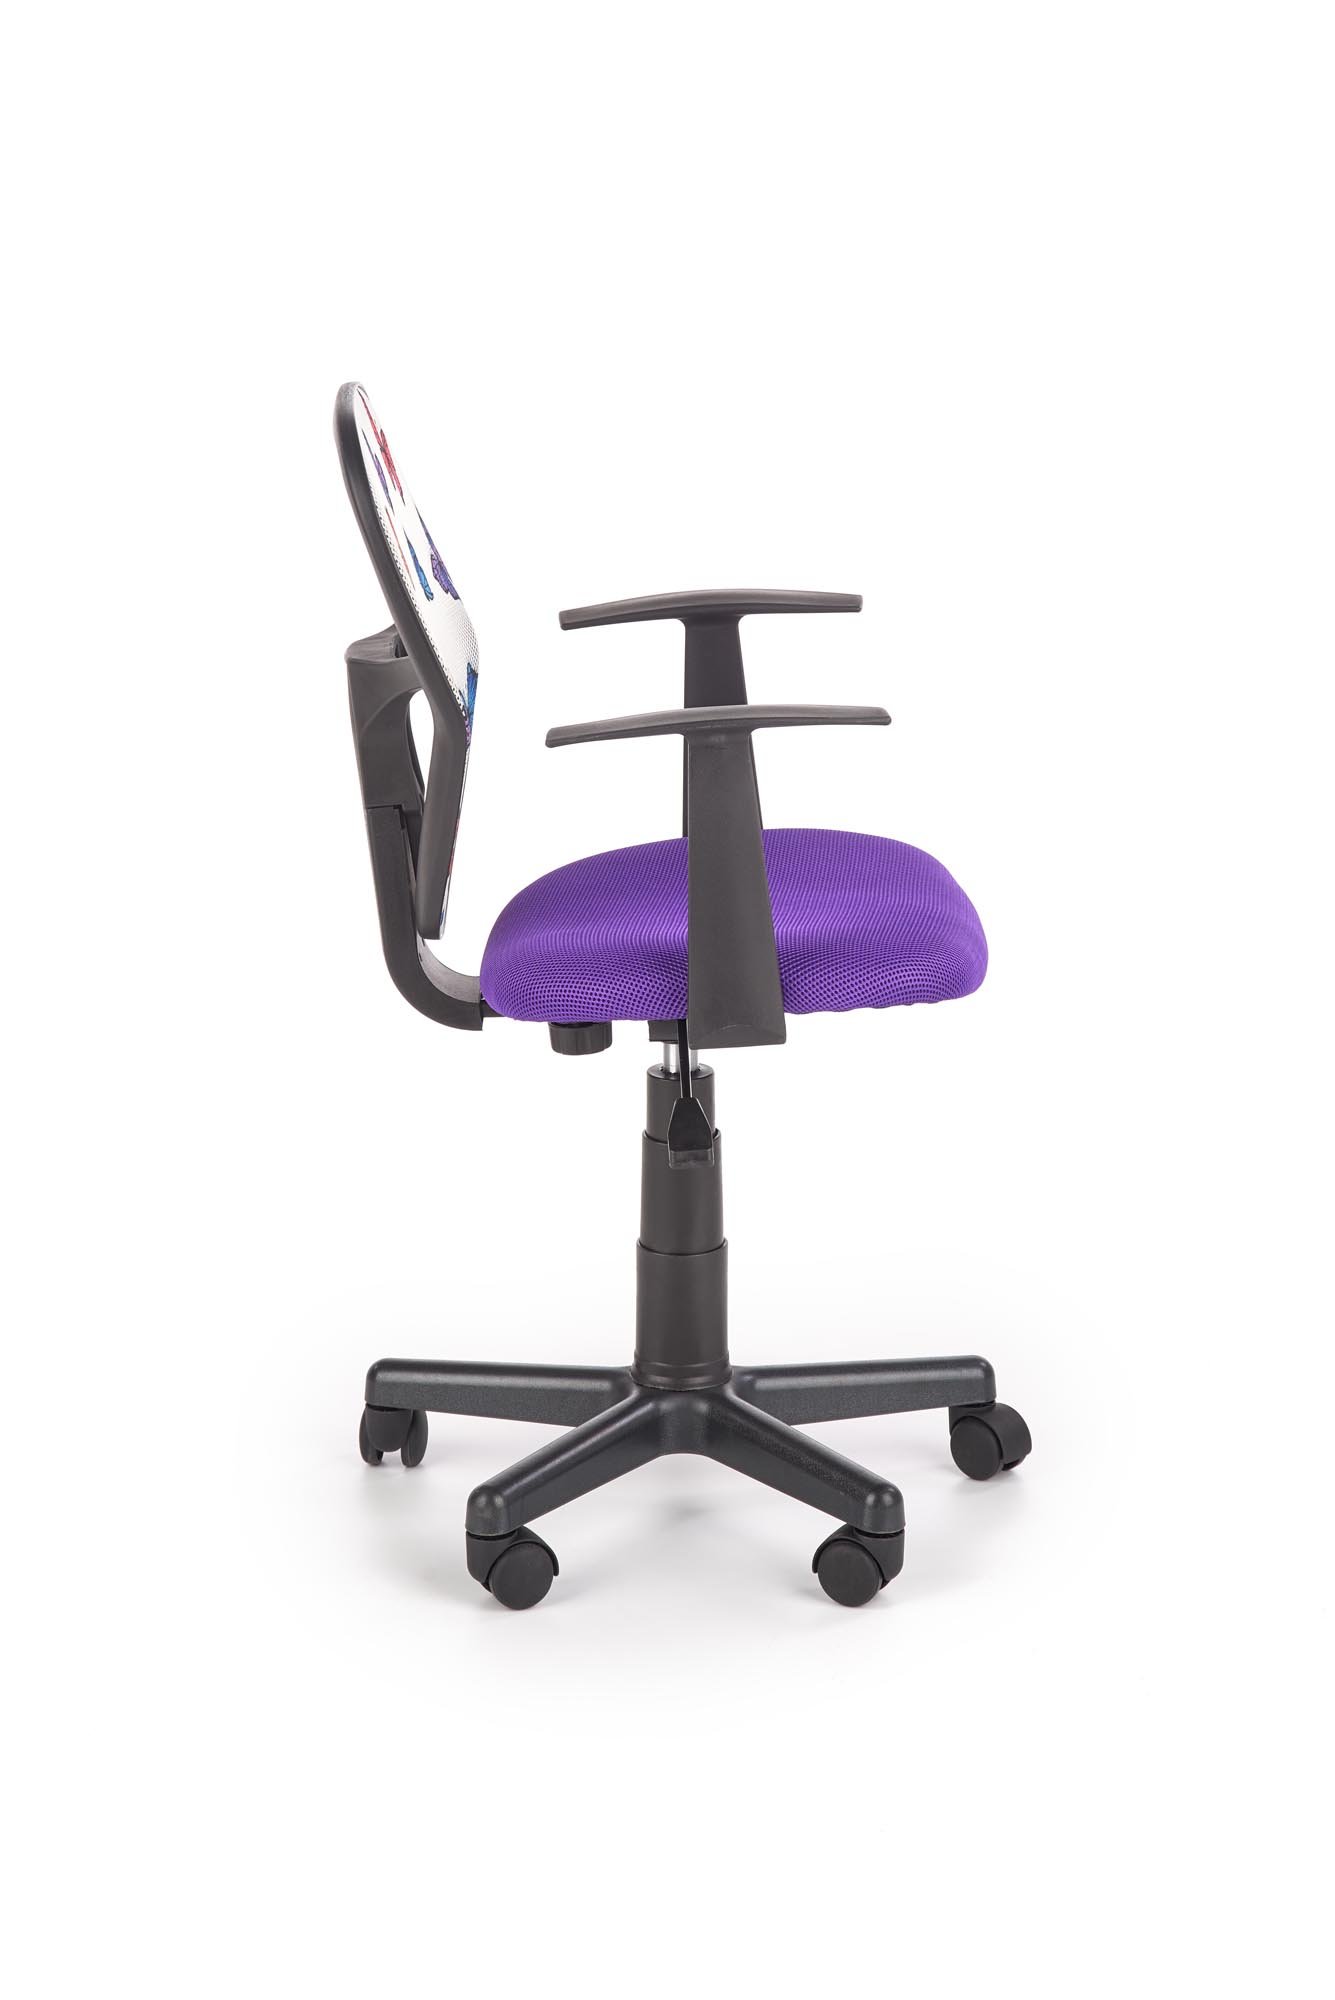 Vaikiška kėdė SPIKER, violetinė - 4